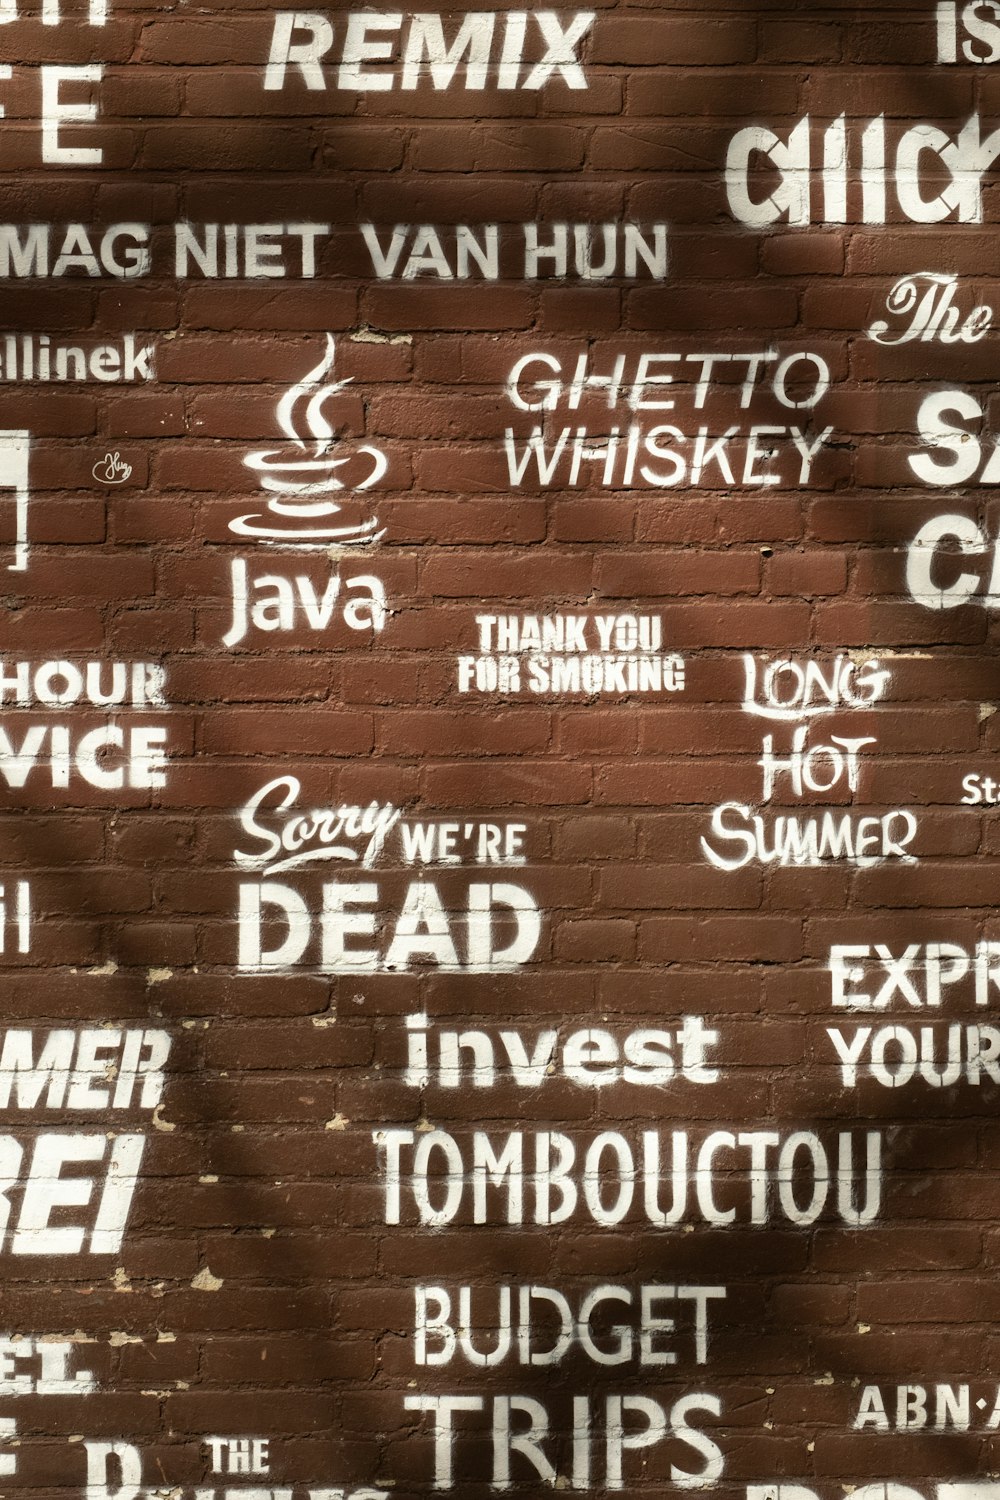 a brick wall with graffiti written on it